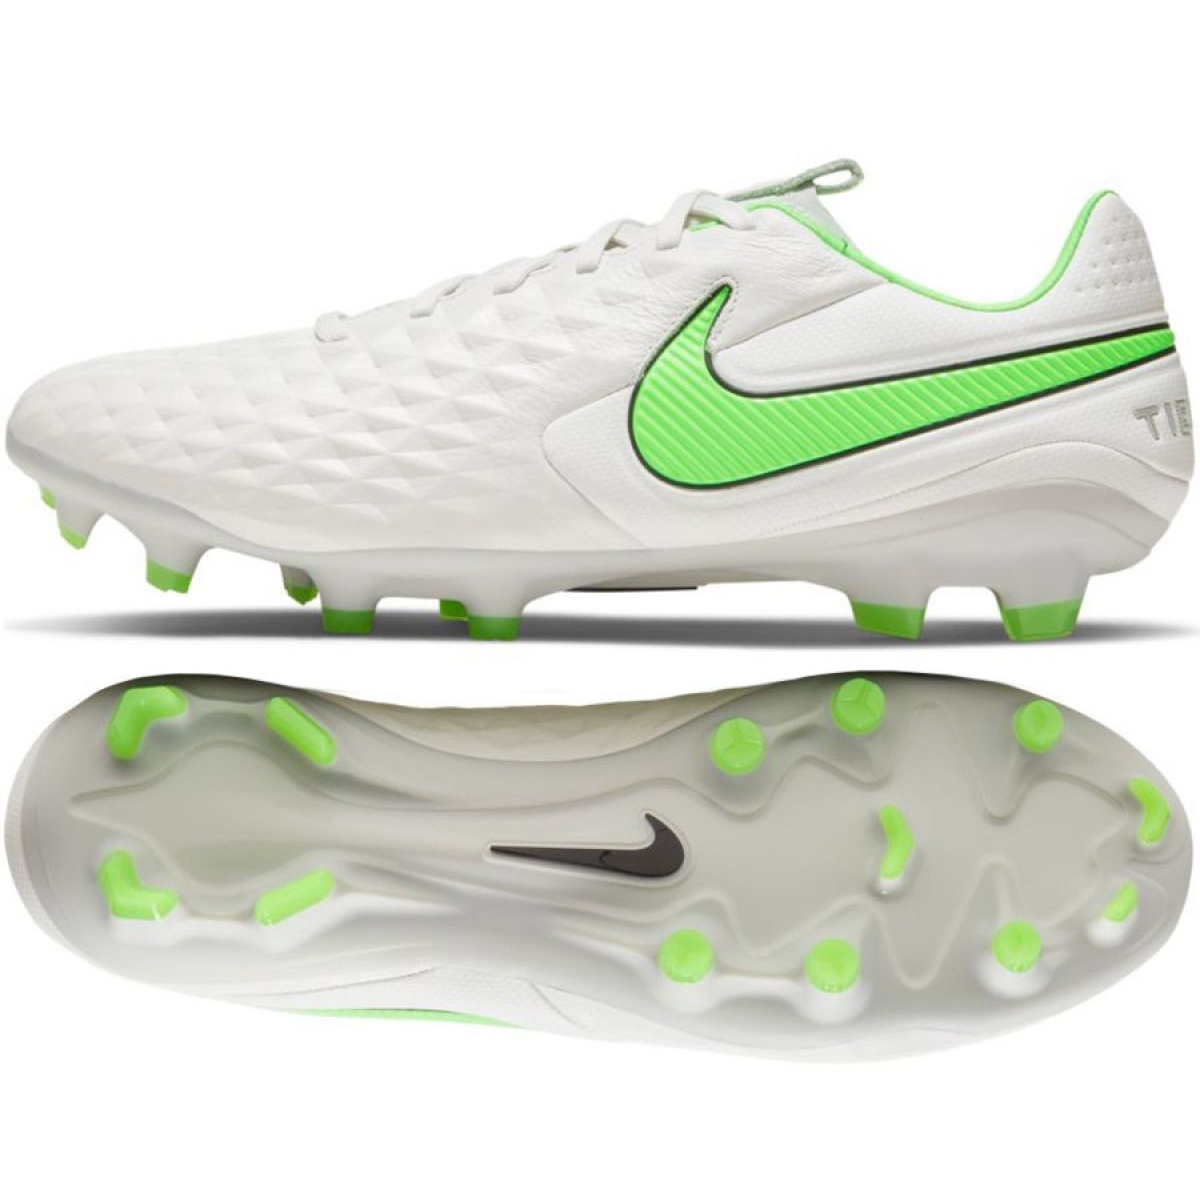 Buty piłkarskie Nike Tiempo Legend 8 Pro Fg M AT6133 030 białe białe